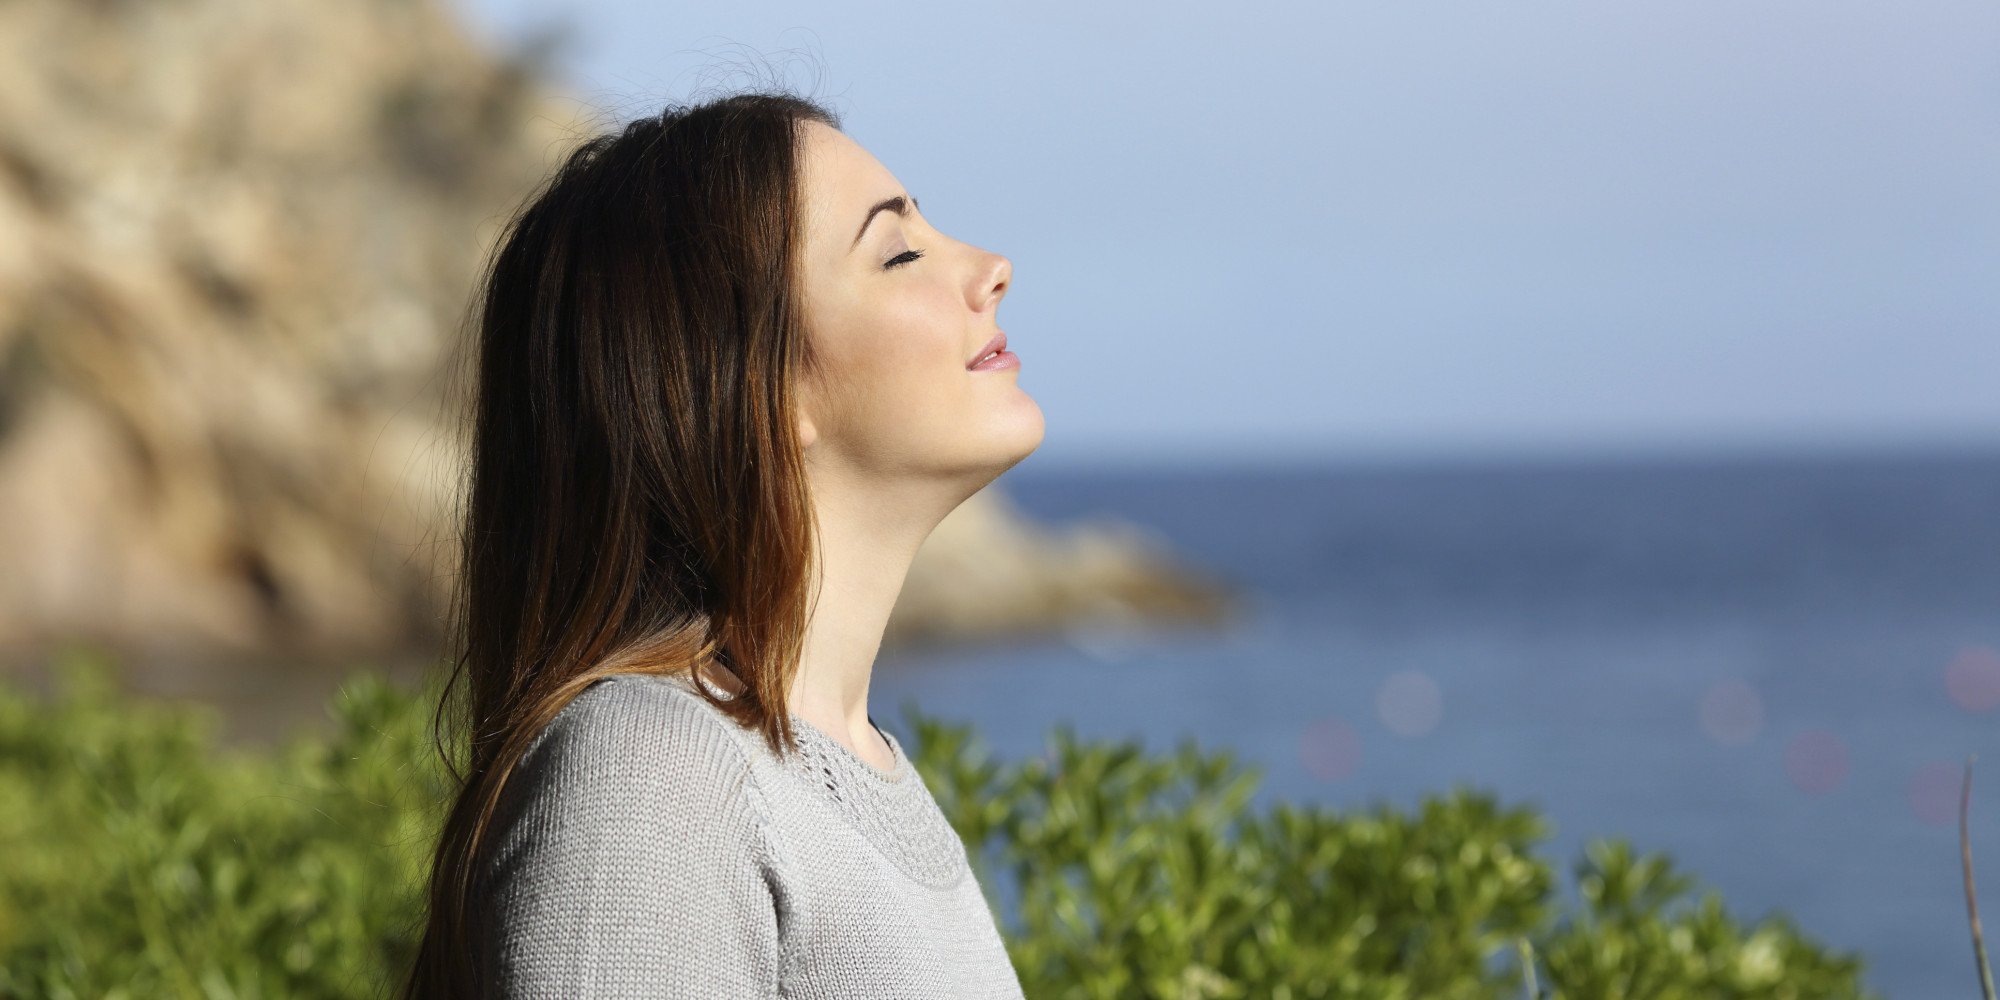   Hít thở không khí trong lành vào buổi sáng giúp cơ thể sảng khoái hơn  